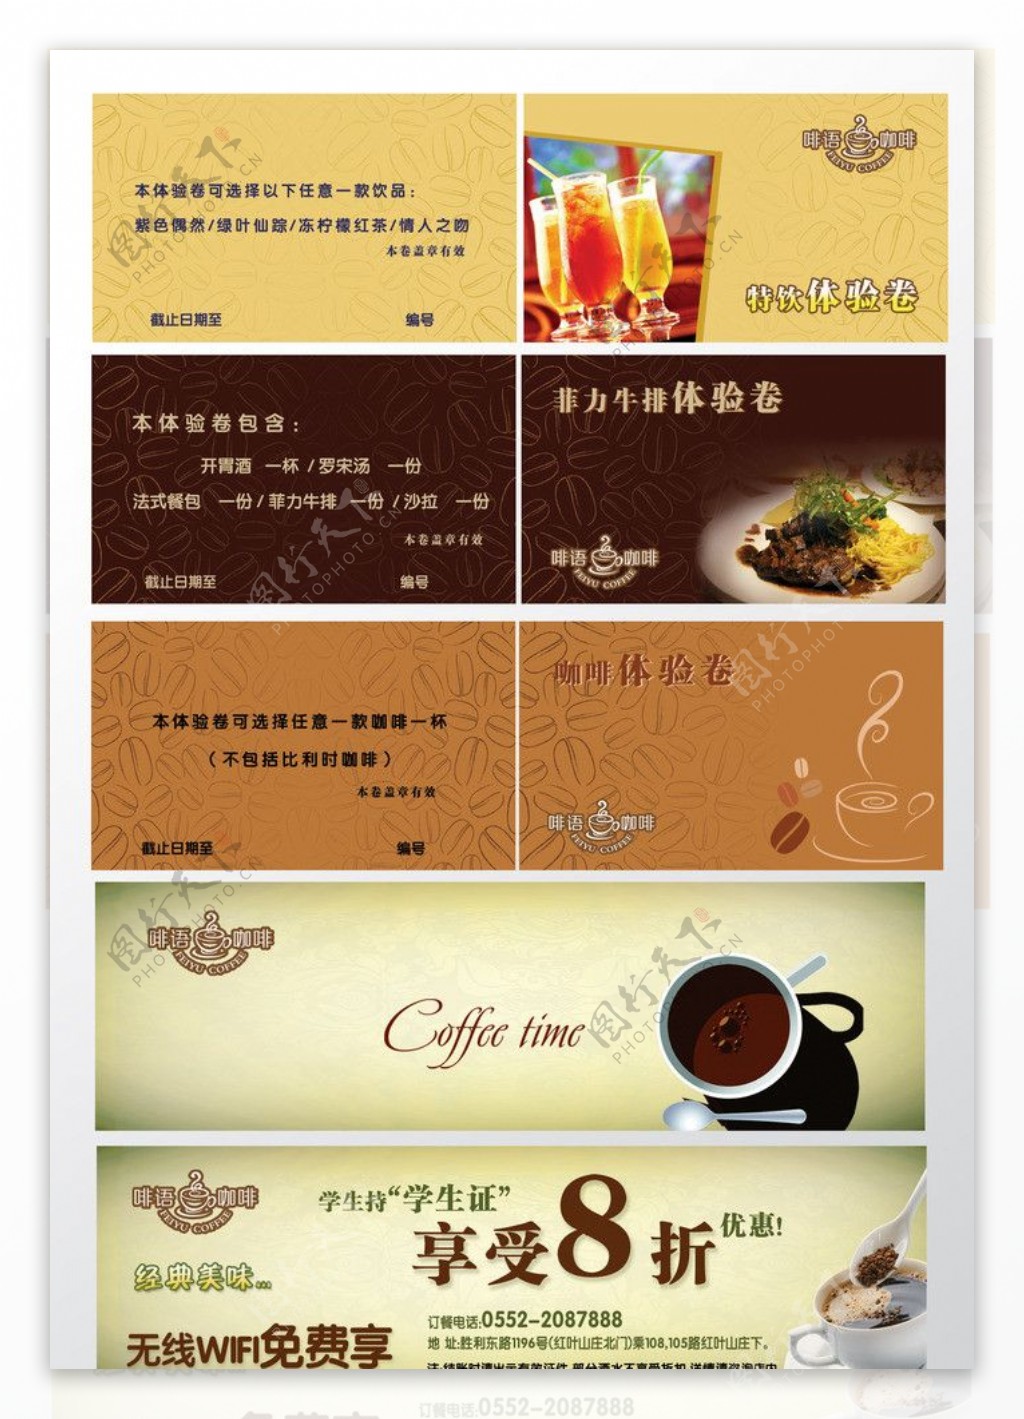 咖啡饮料代金券会员优惠卡图片